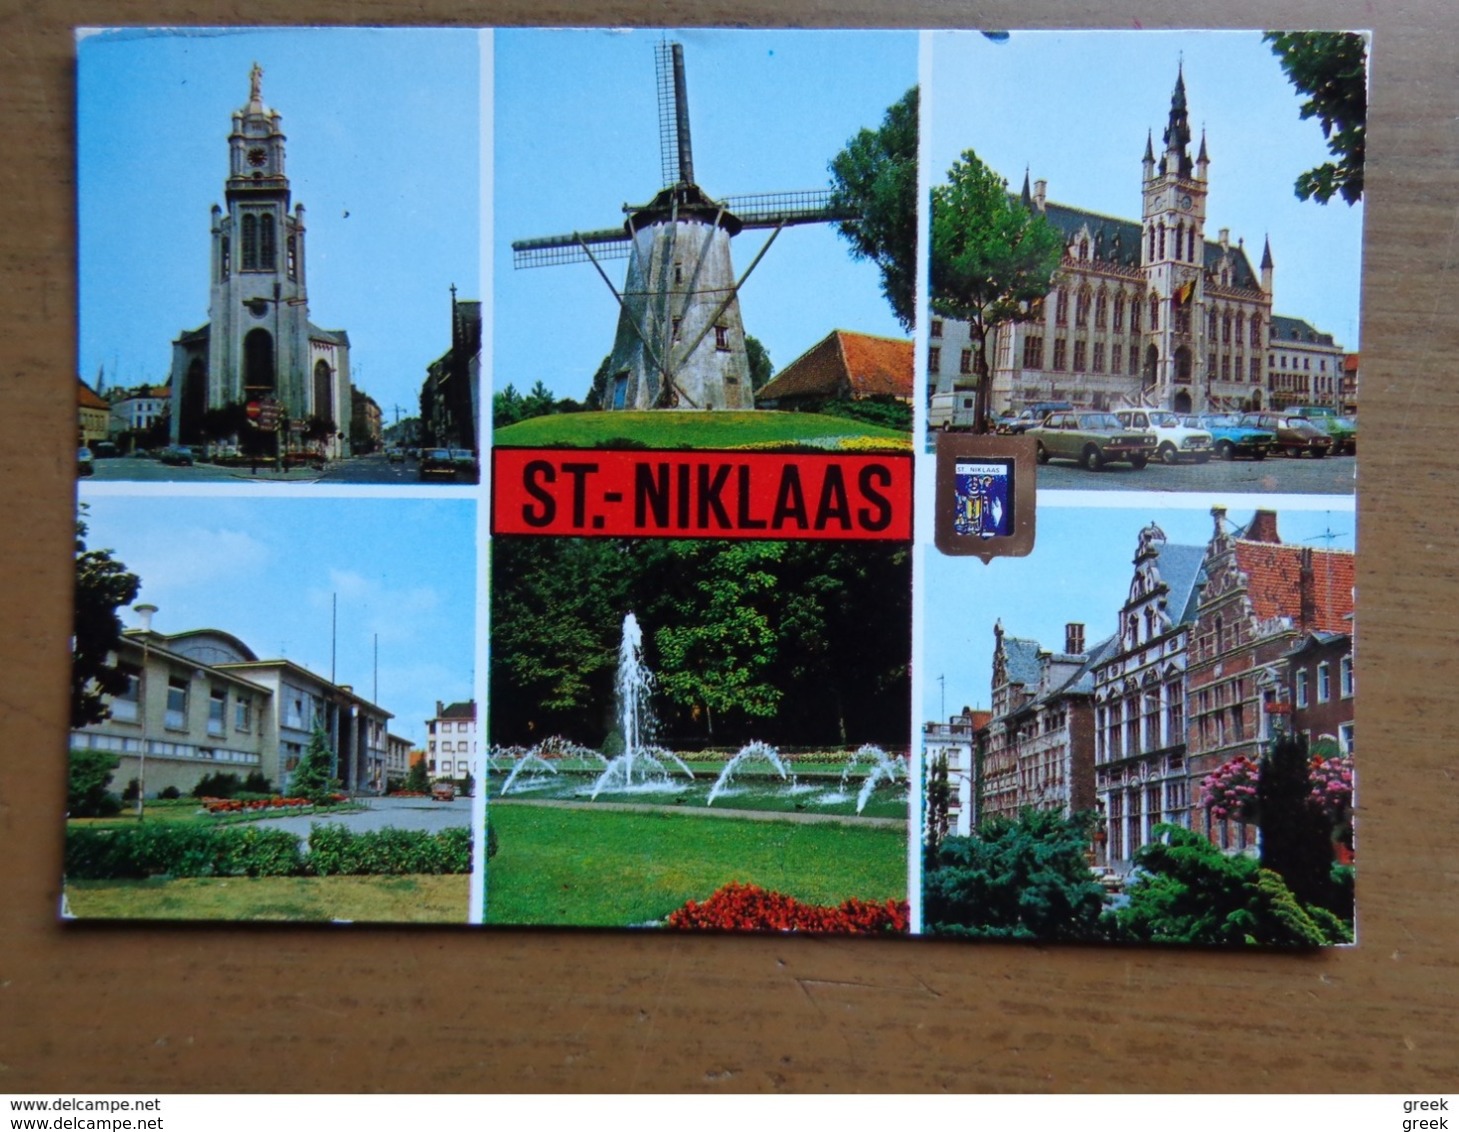 Doos postkaarten (3kg866) Allerlei landen en thema's, ook België gekleurd (zie enkele foto's)